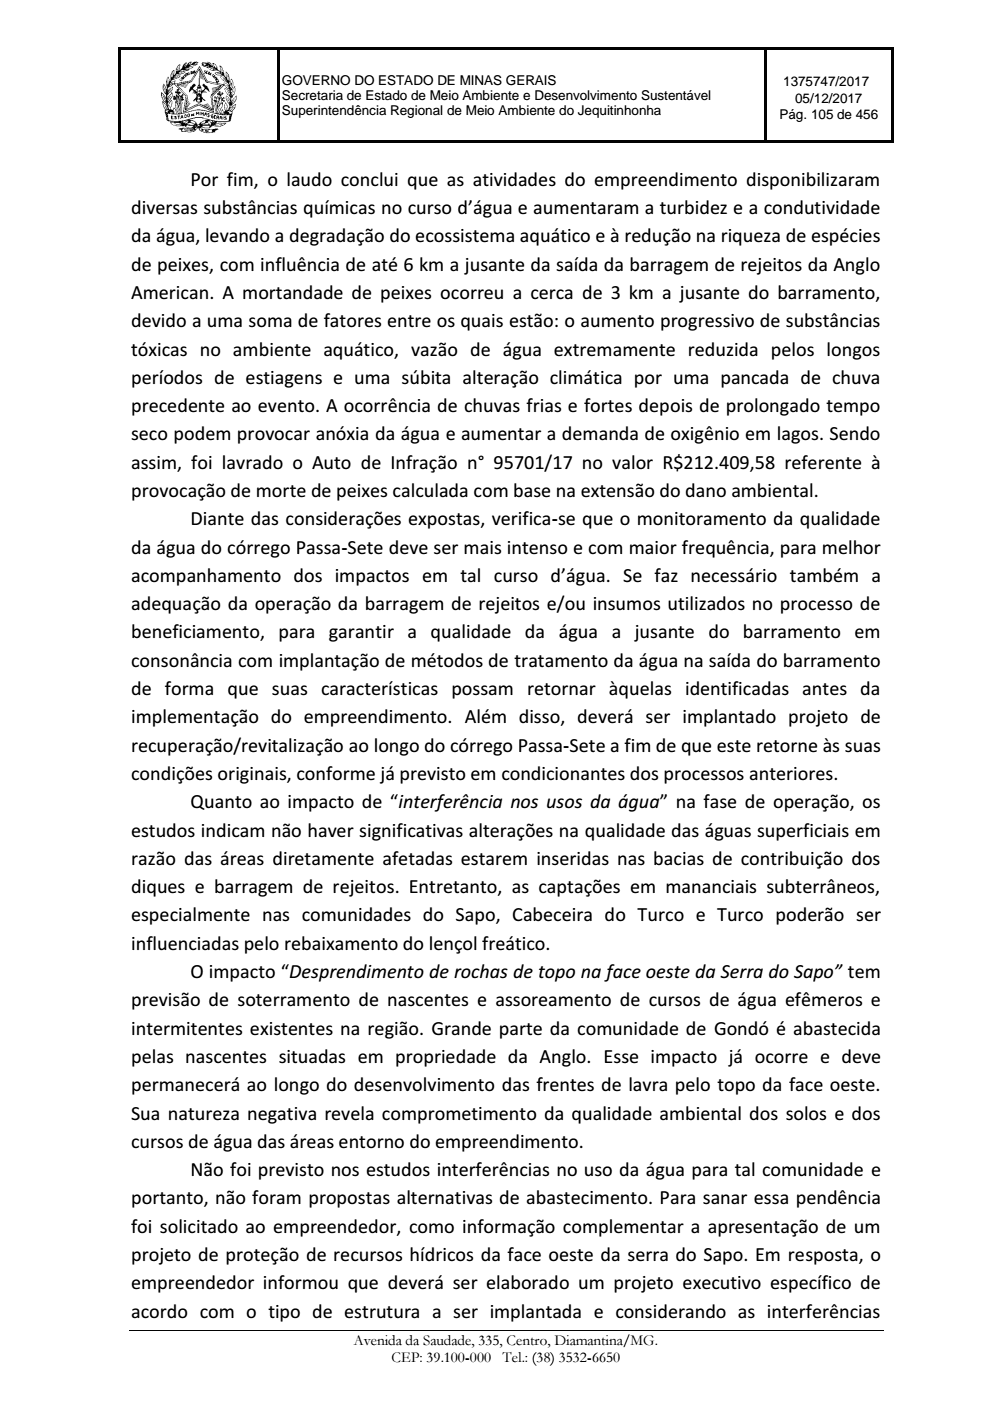 Page 105 from Parecer único da Secretaria de estado de Meio Ambiente e Desenvolvimento Sustentável (SEMAD)